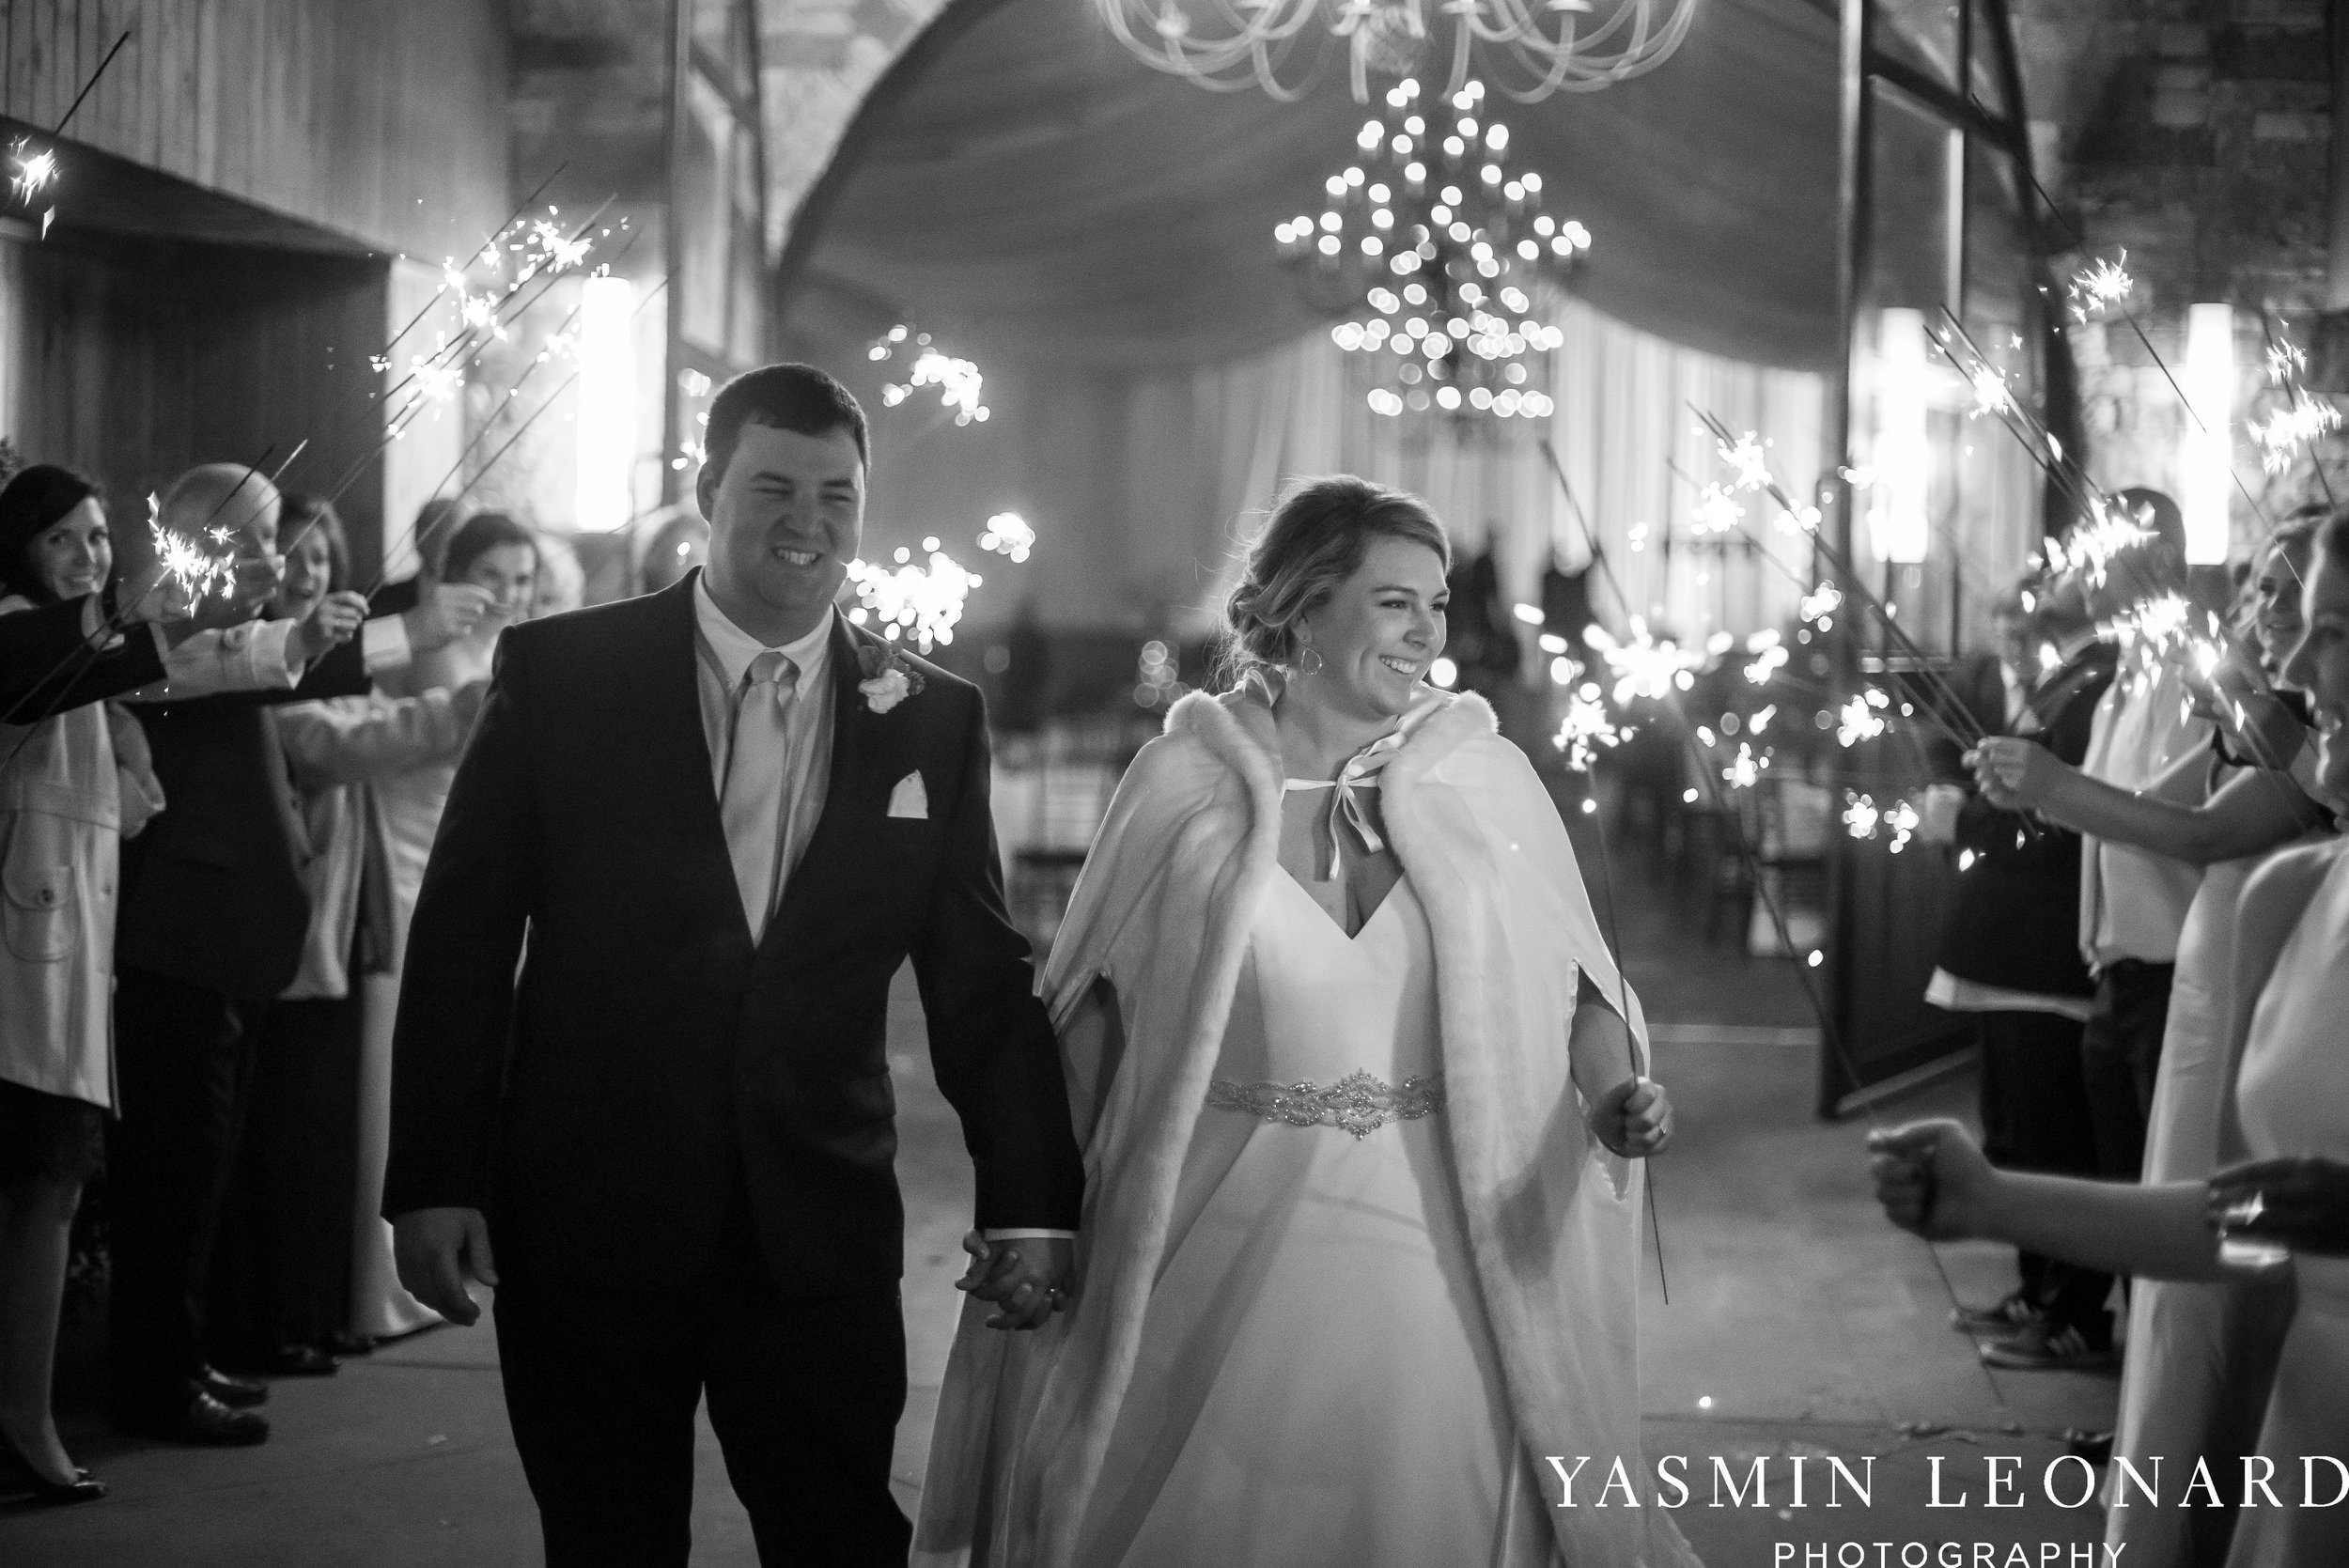 Adaumont Farm - Wesley Memorial Weddings - High Point Weddings - Just Priceless - NC Wedding Photographer - Yasmin Leonard Photography - High Point Wedding Vendors-78.jpg